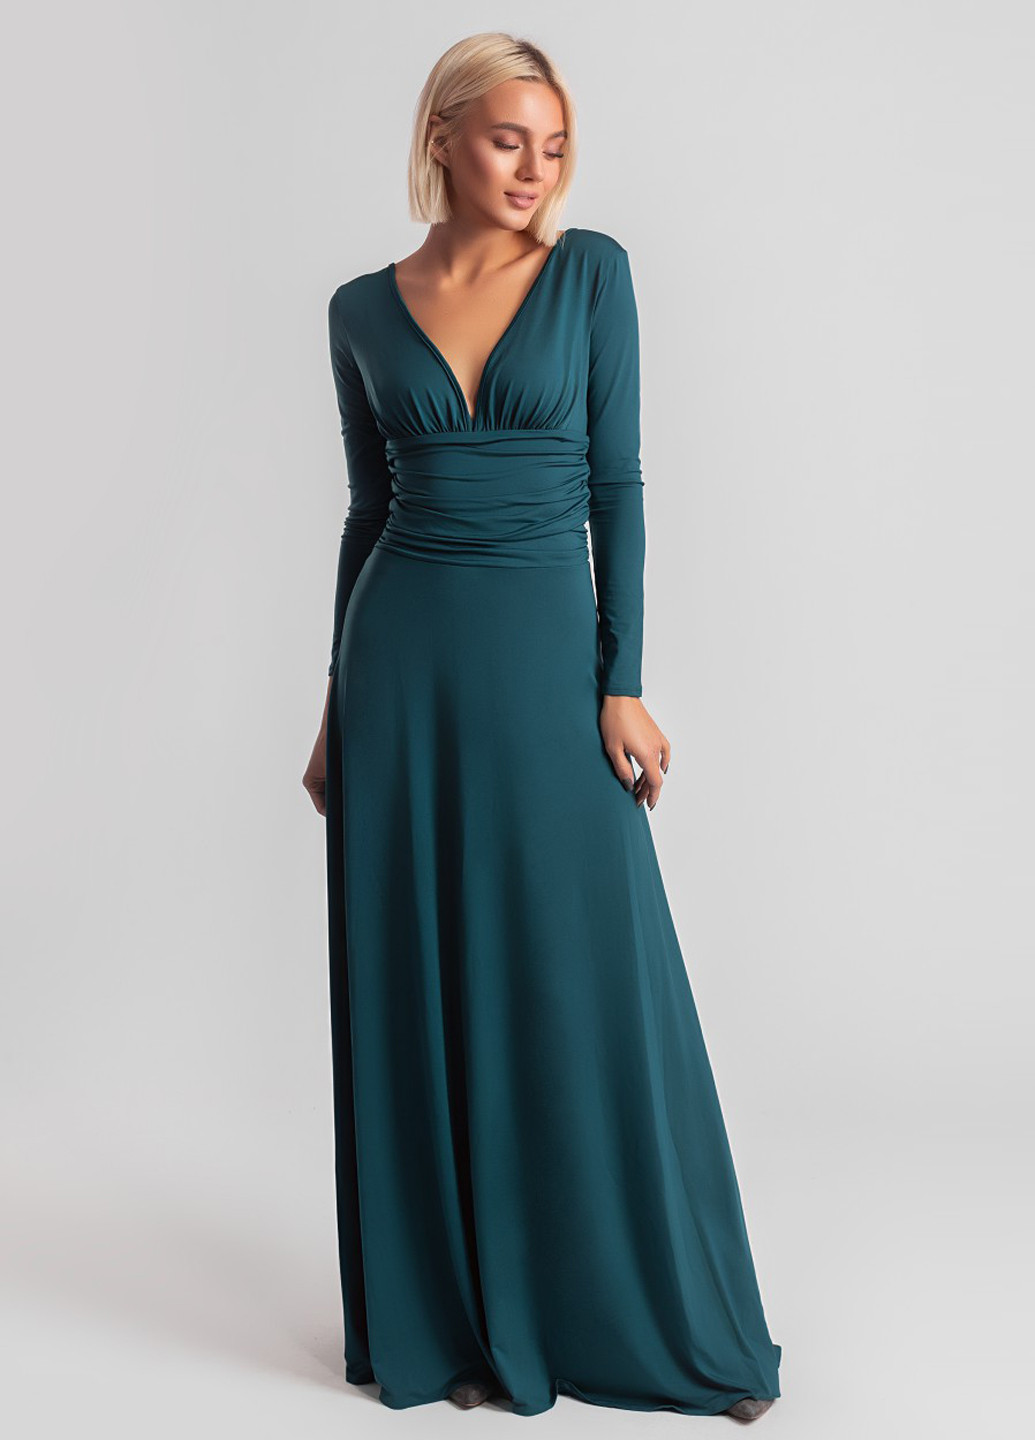 Бутылочное зеленое вечернее платье макси Charm Collection однотонное